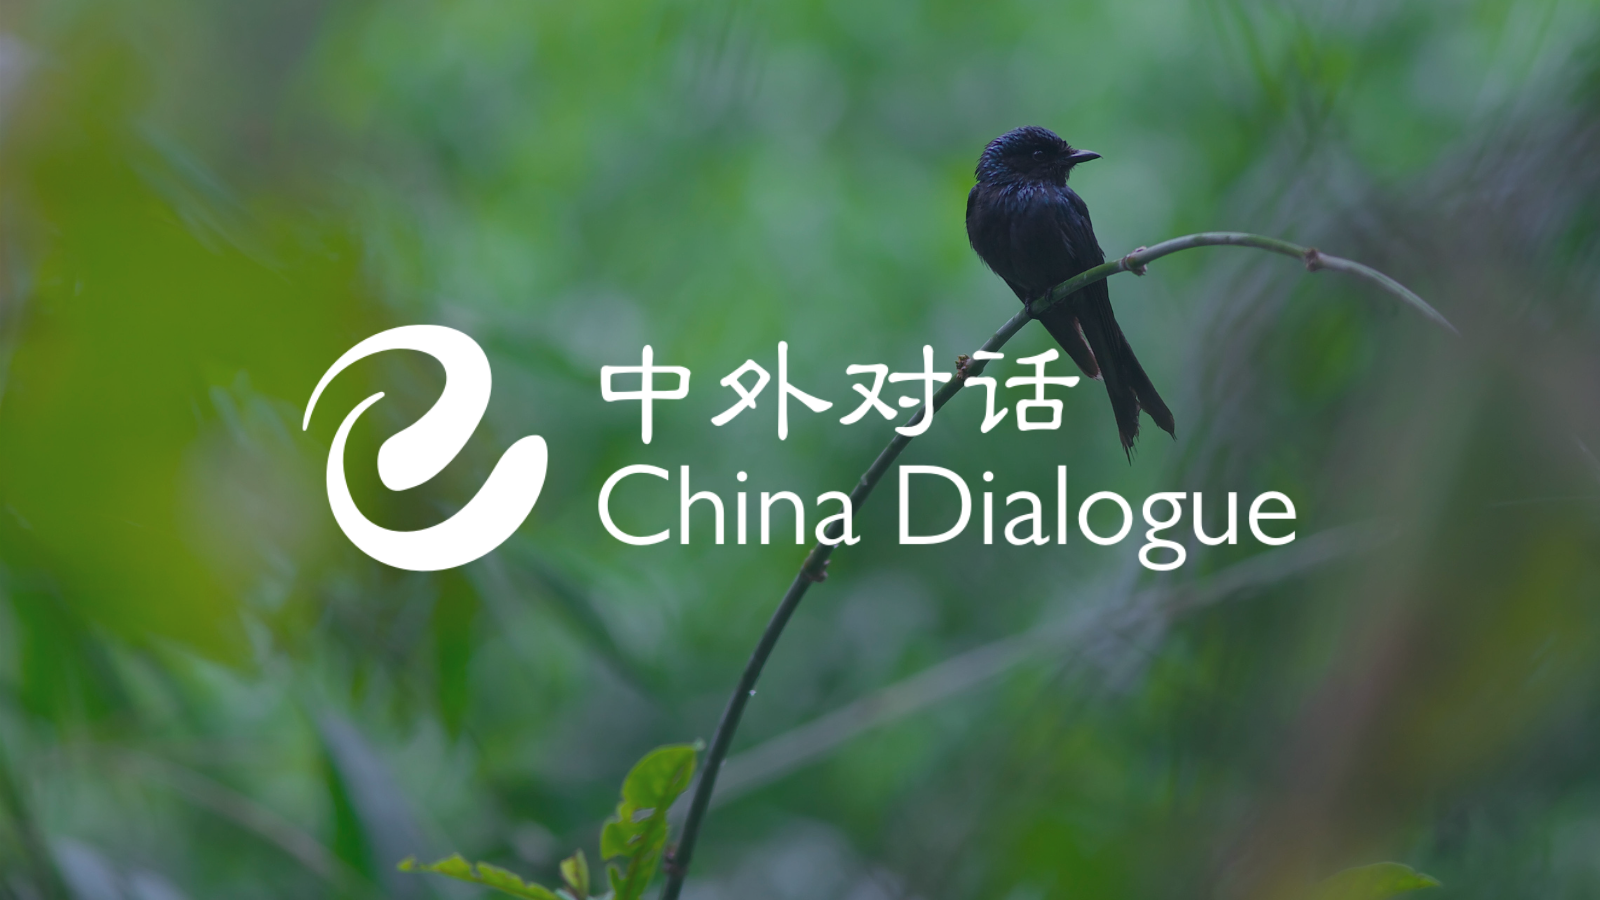 China Dialogue | China environment and climate news